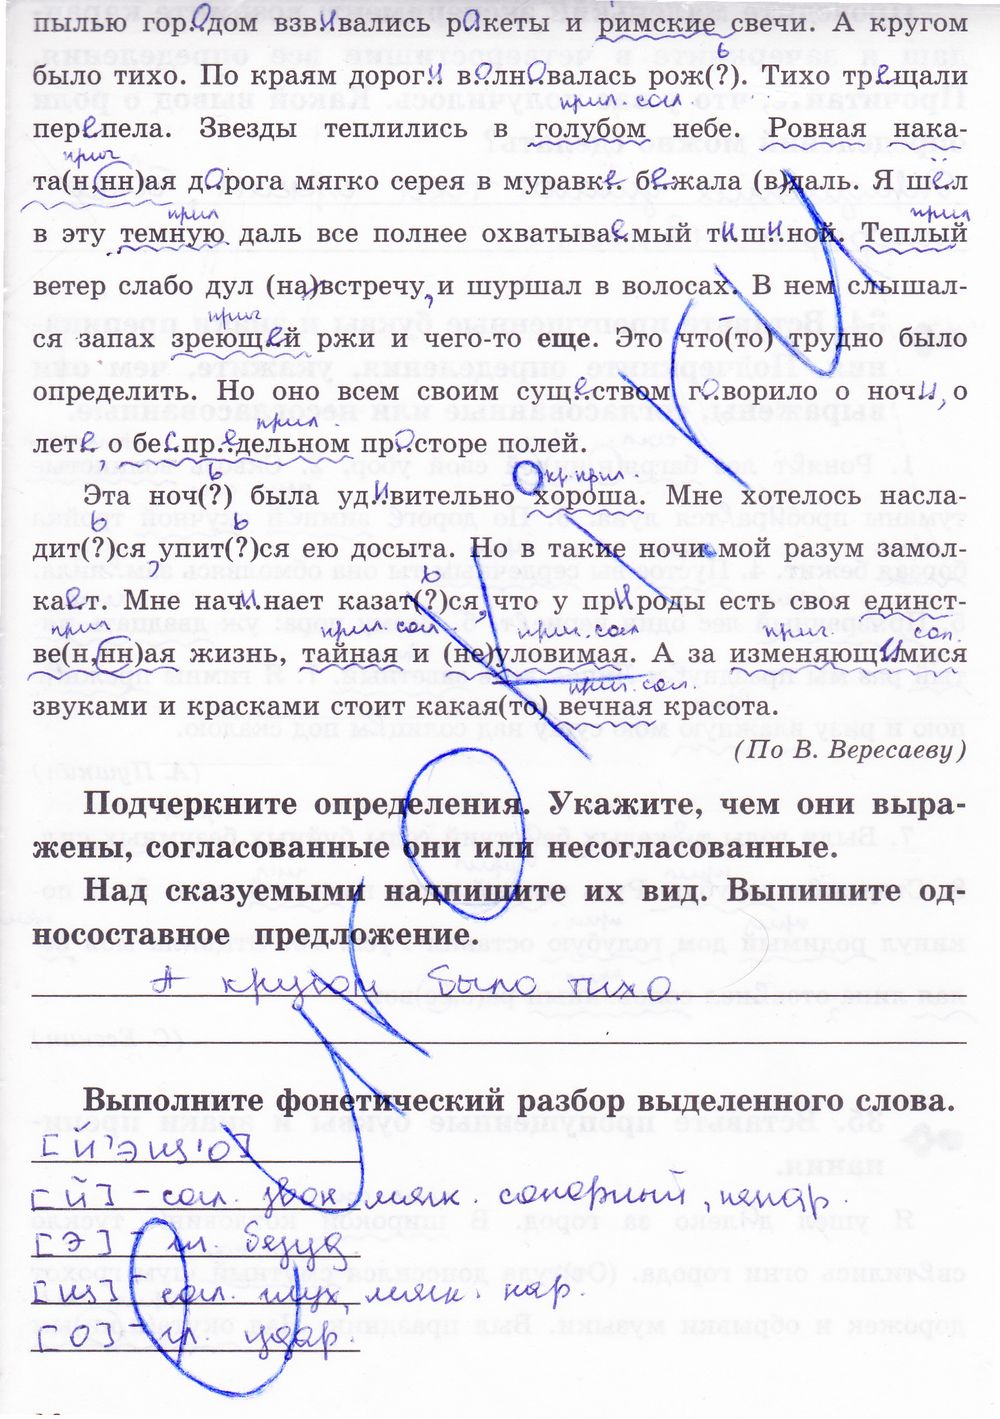 ГДЗ Русский язык 8 класс - стр. 36